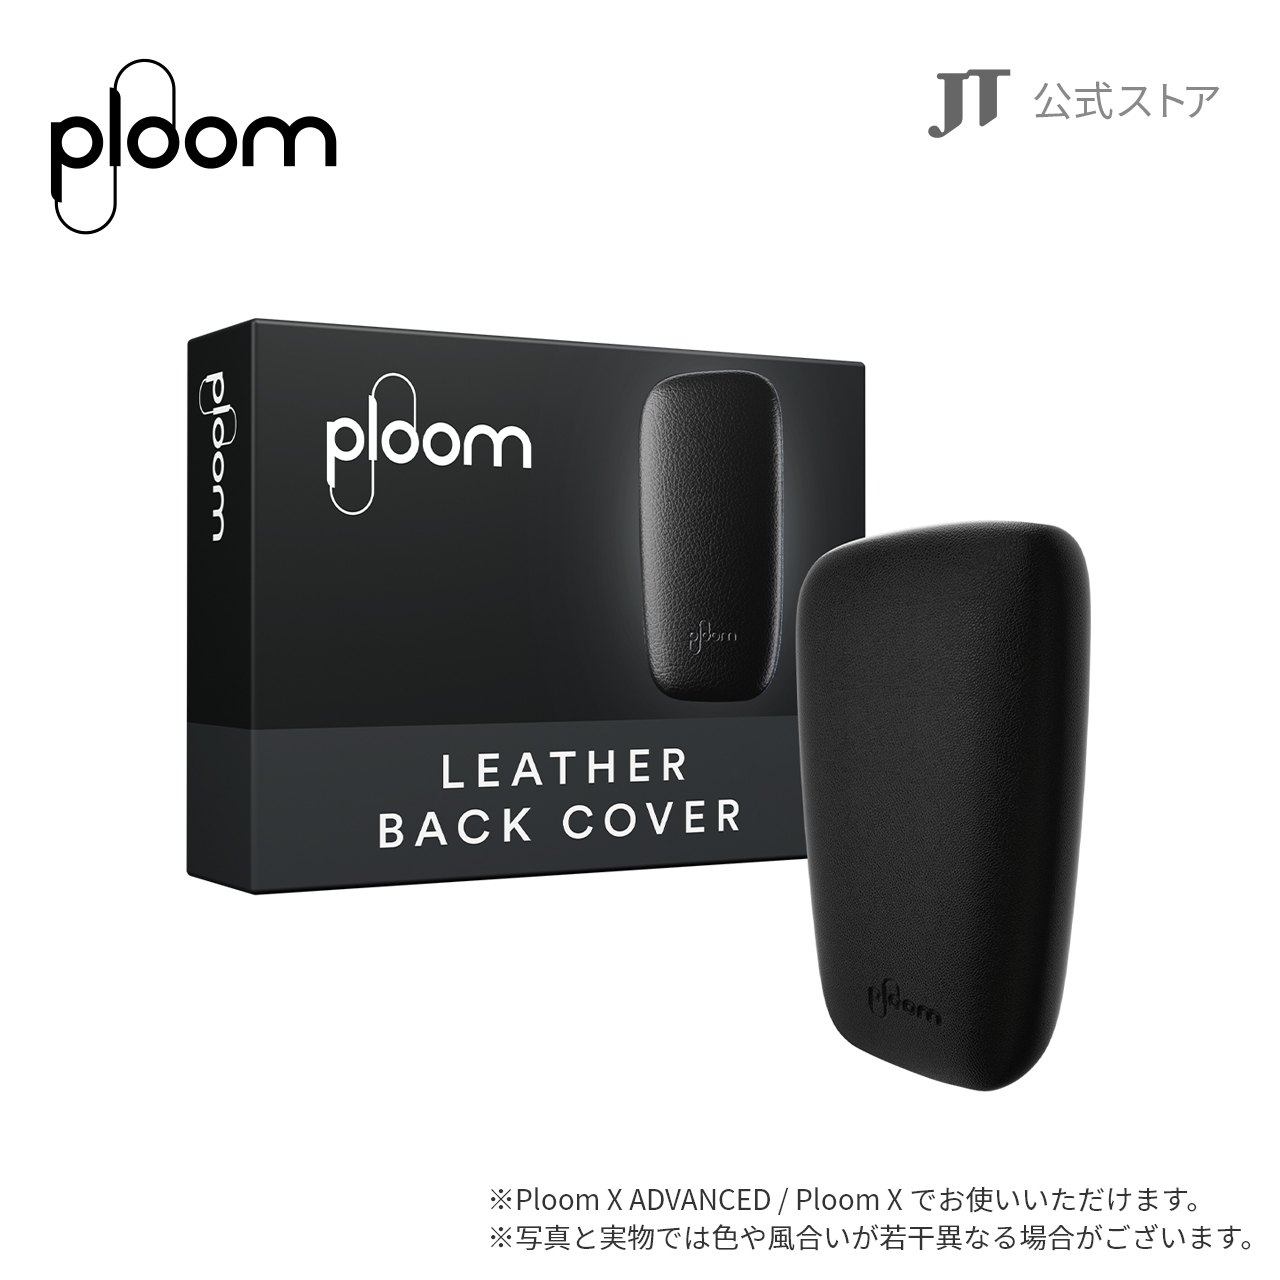 プルーム Ploom X レザー・バックカバー ブラック 加熱式たばこ、電子たばこアクセサリーの商品画像